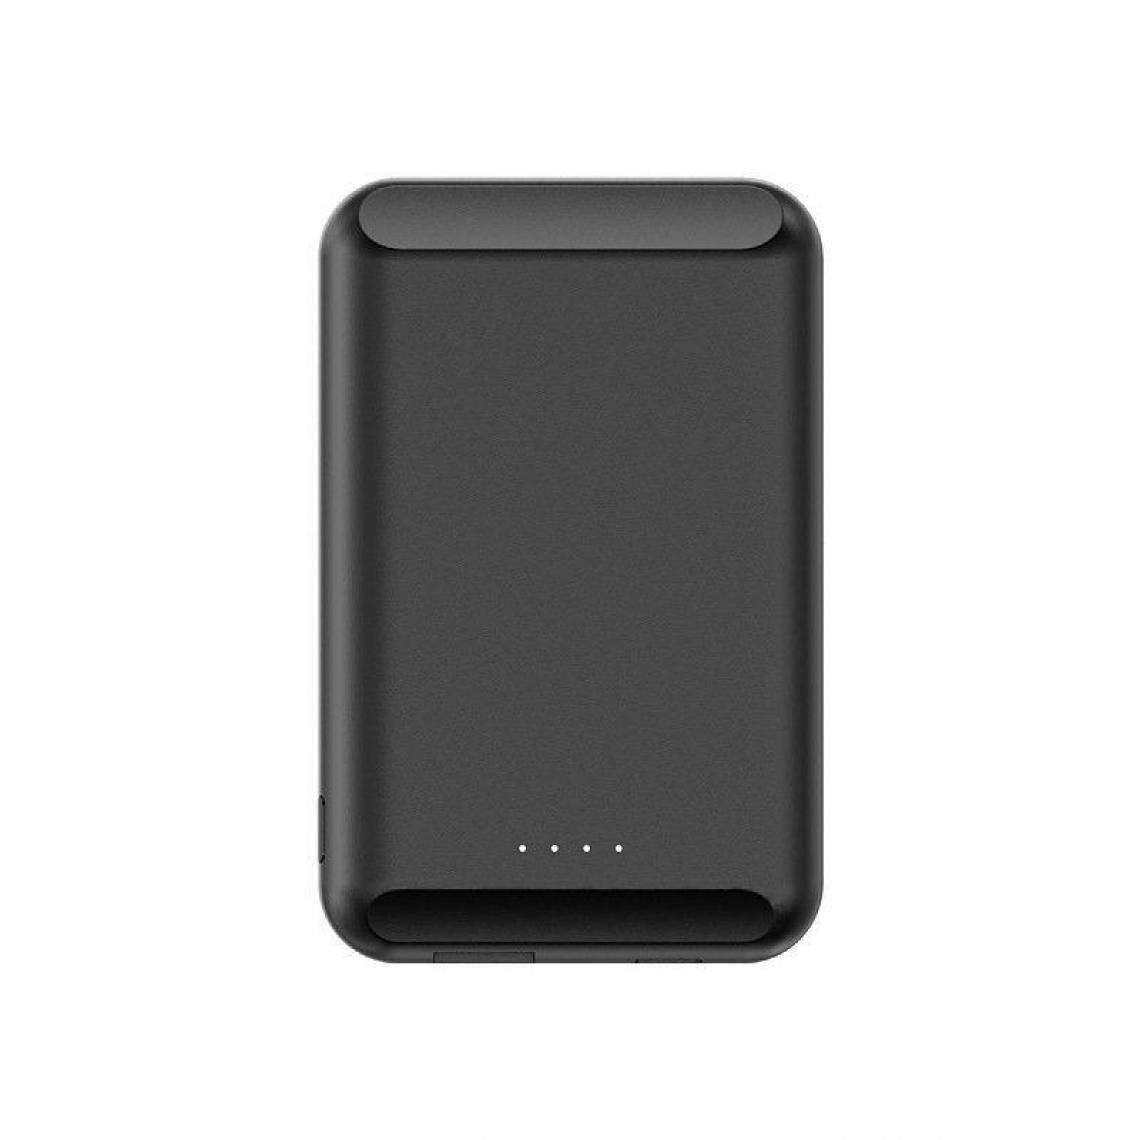 Chrono - Chargeur de Atterie Magnétique Sans Fil Mag-Safe Compatible avec le Chargeur(Noir) - Chargeur secteur téléphone